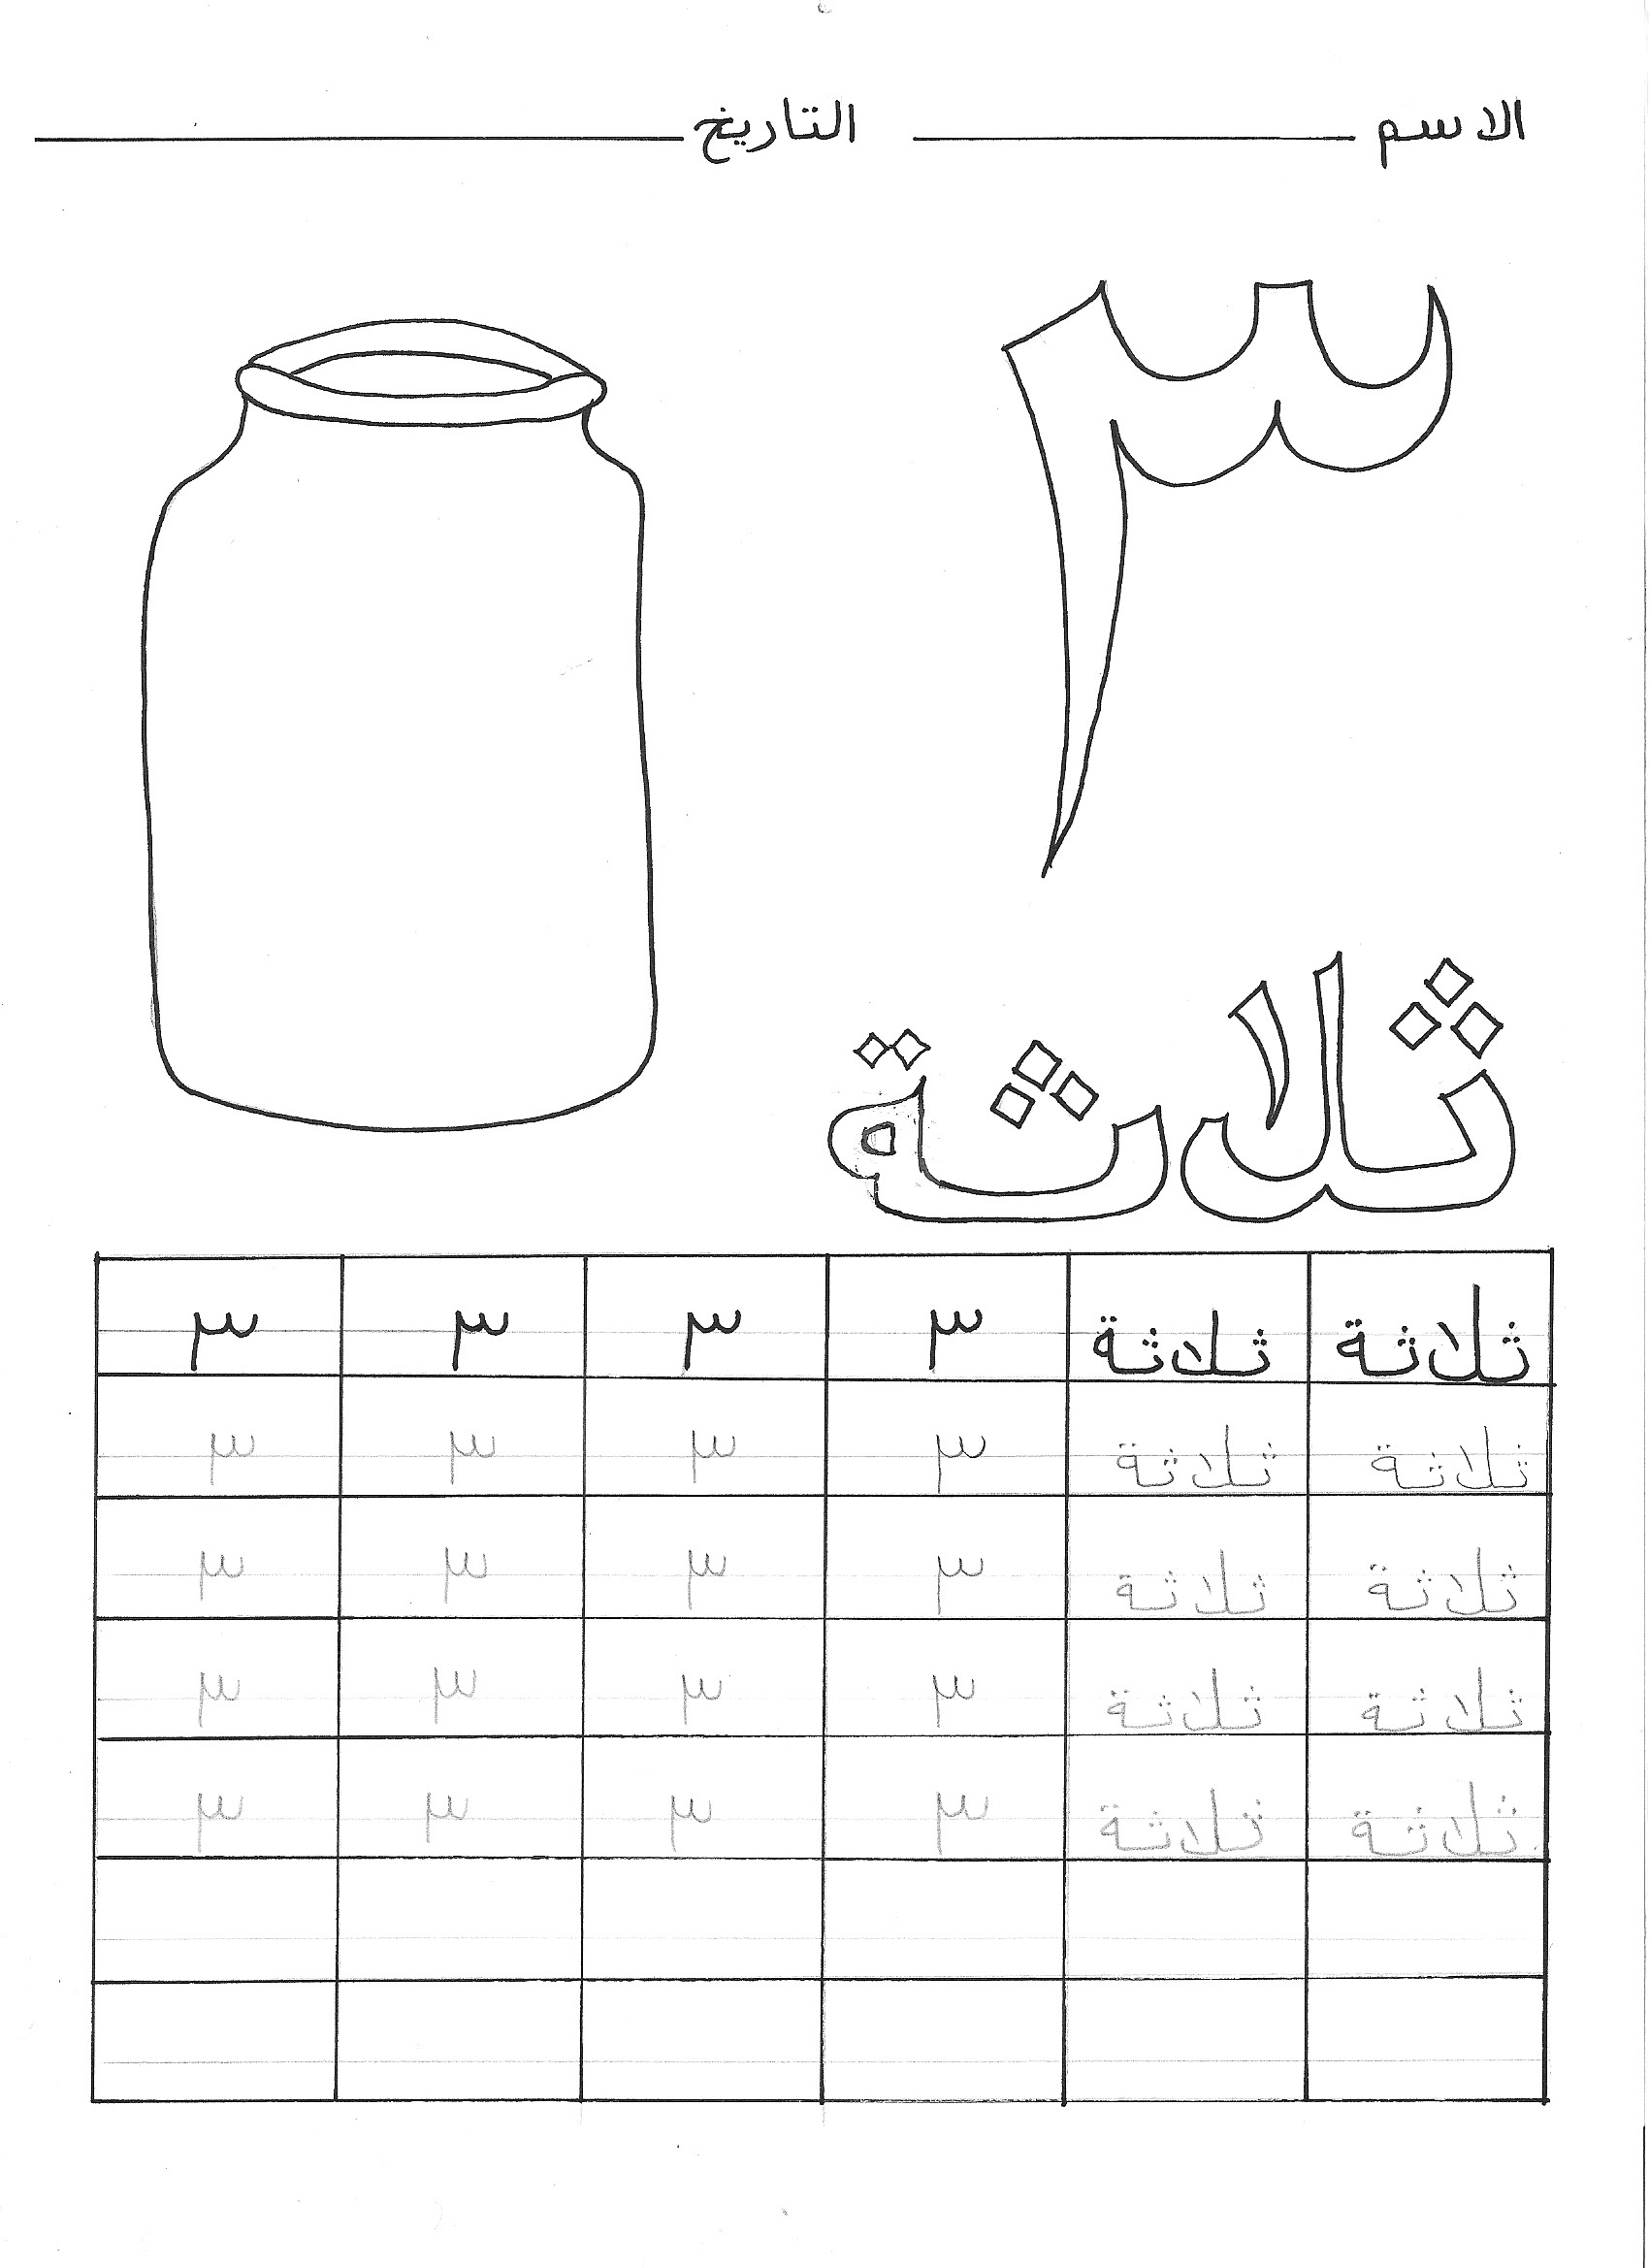 Arabic Numbers Worksheet Pdf